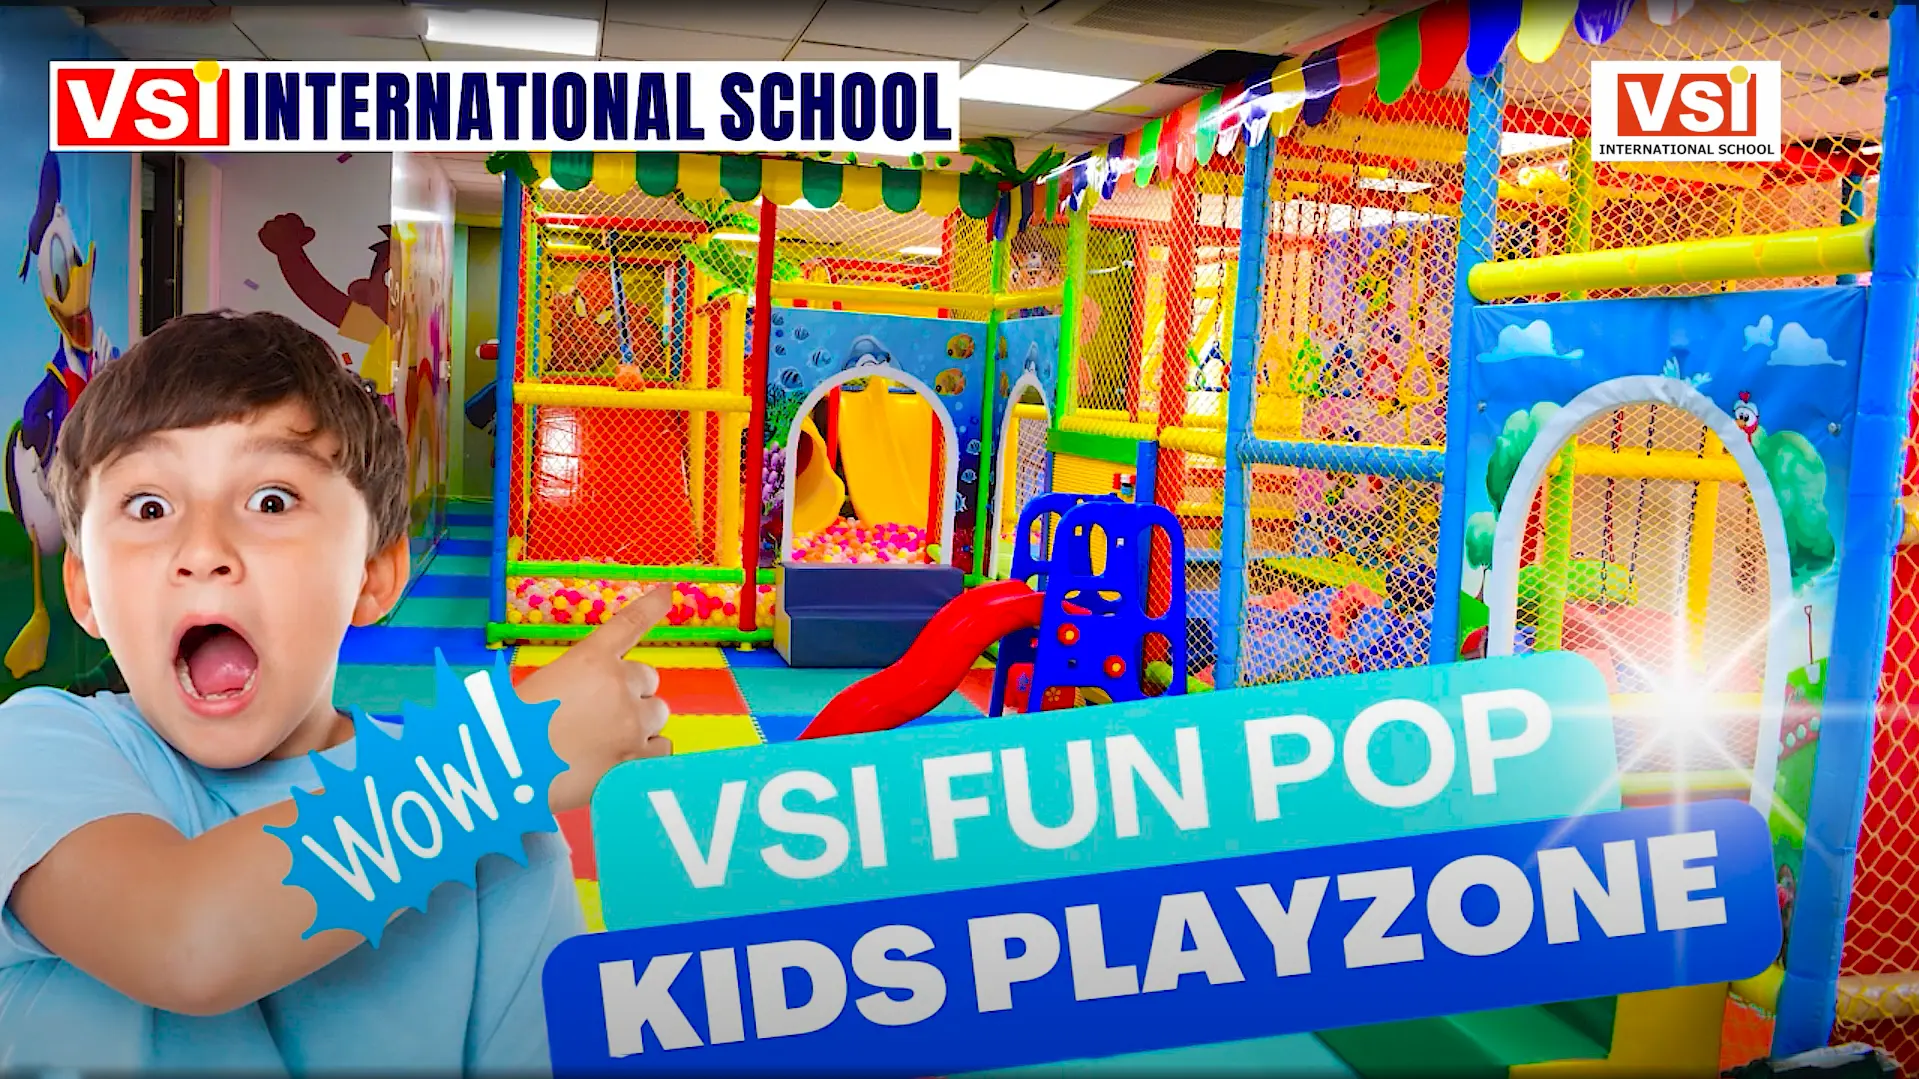 New VSI Fun Pop Kids Play zone at VSI International School